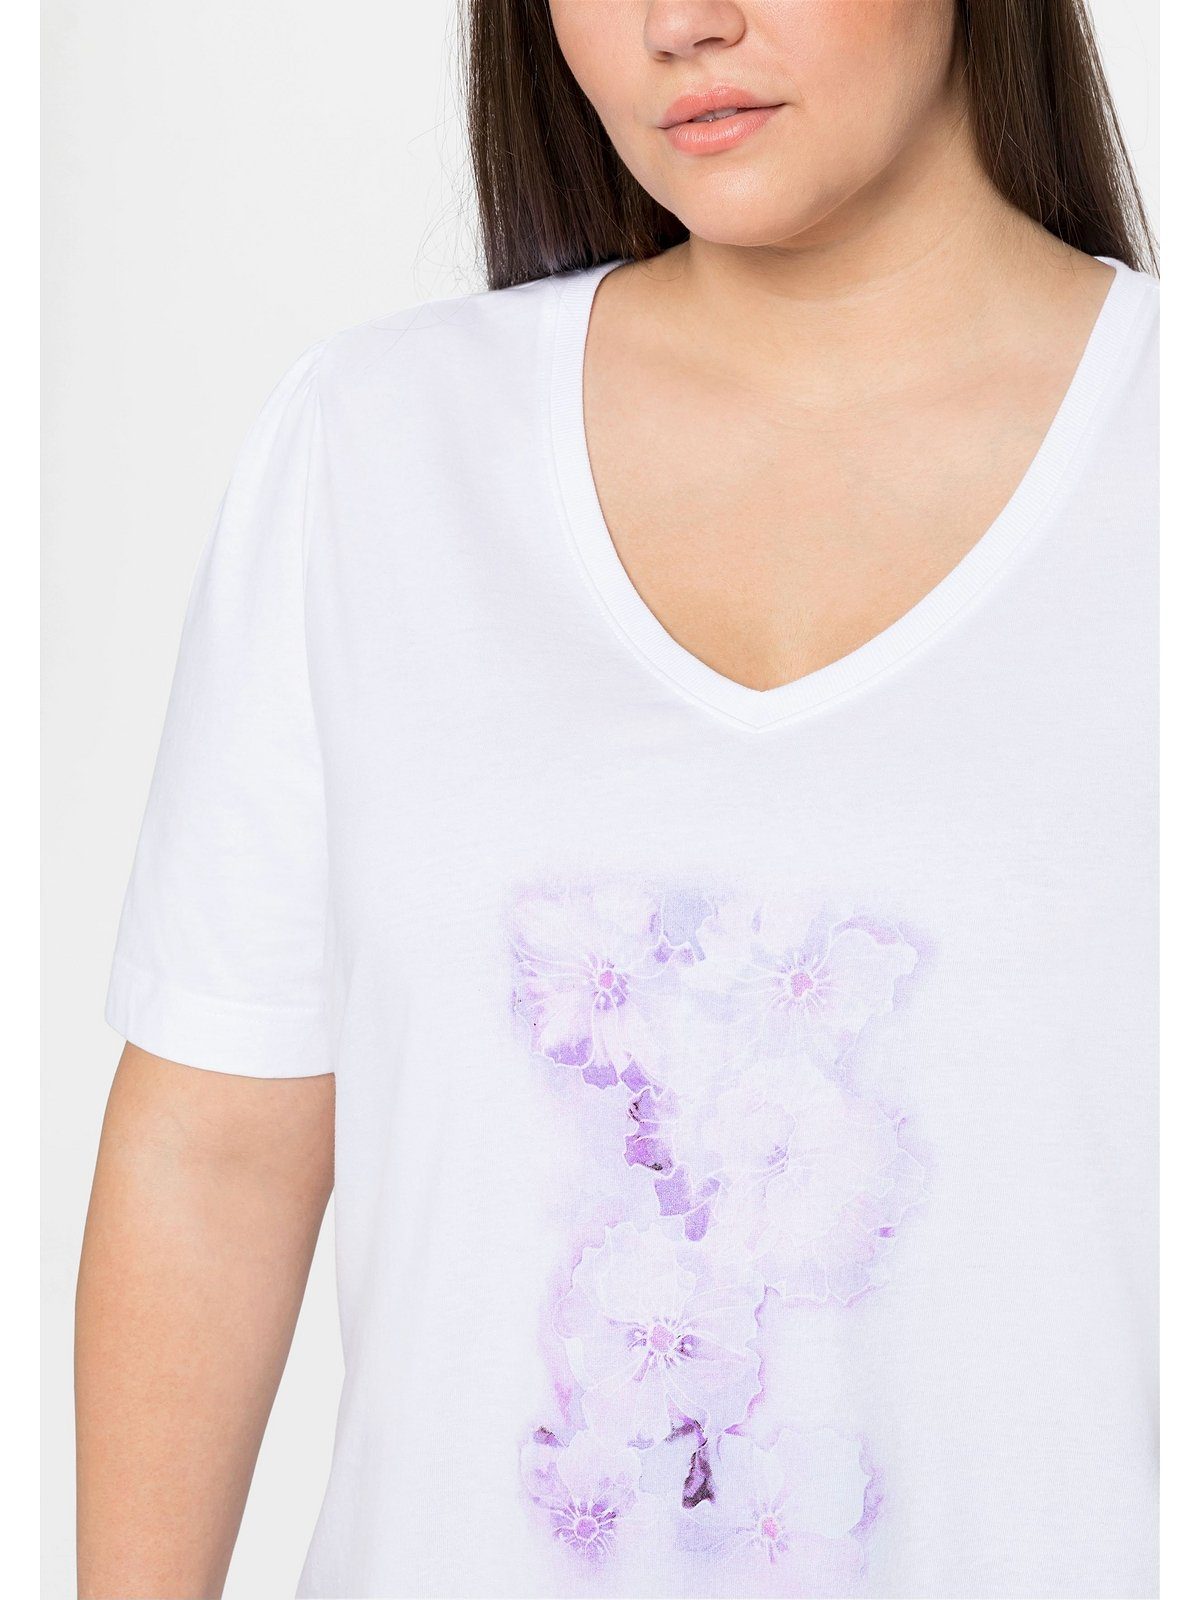 Sheego T-Shirt mit Große Größen aus Baumwolle weiß Frontdruck